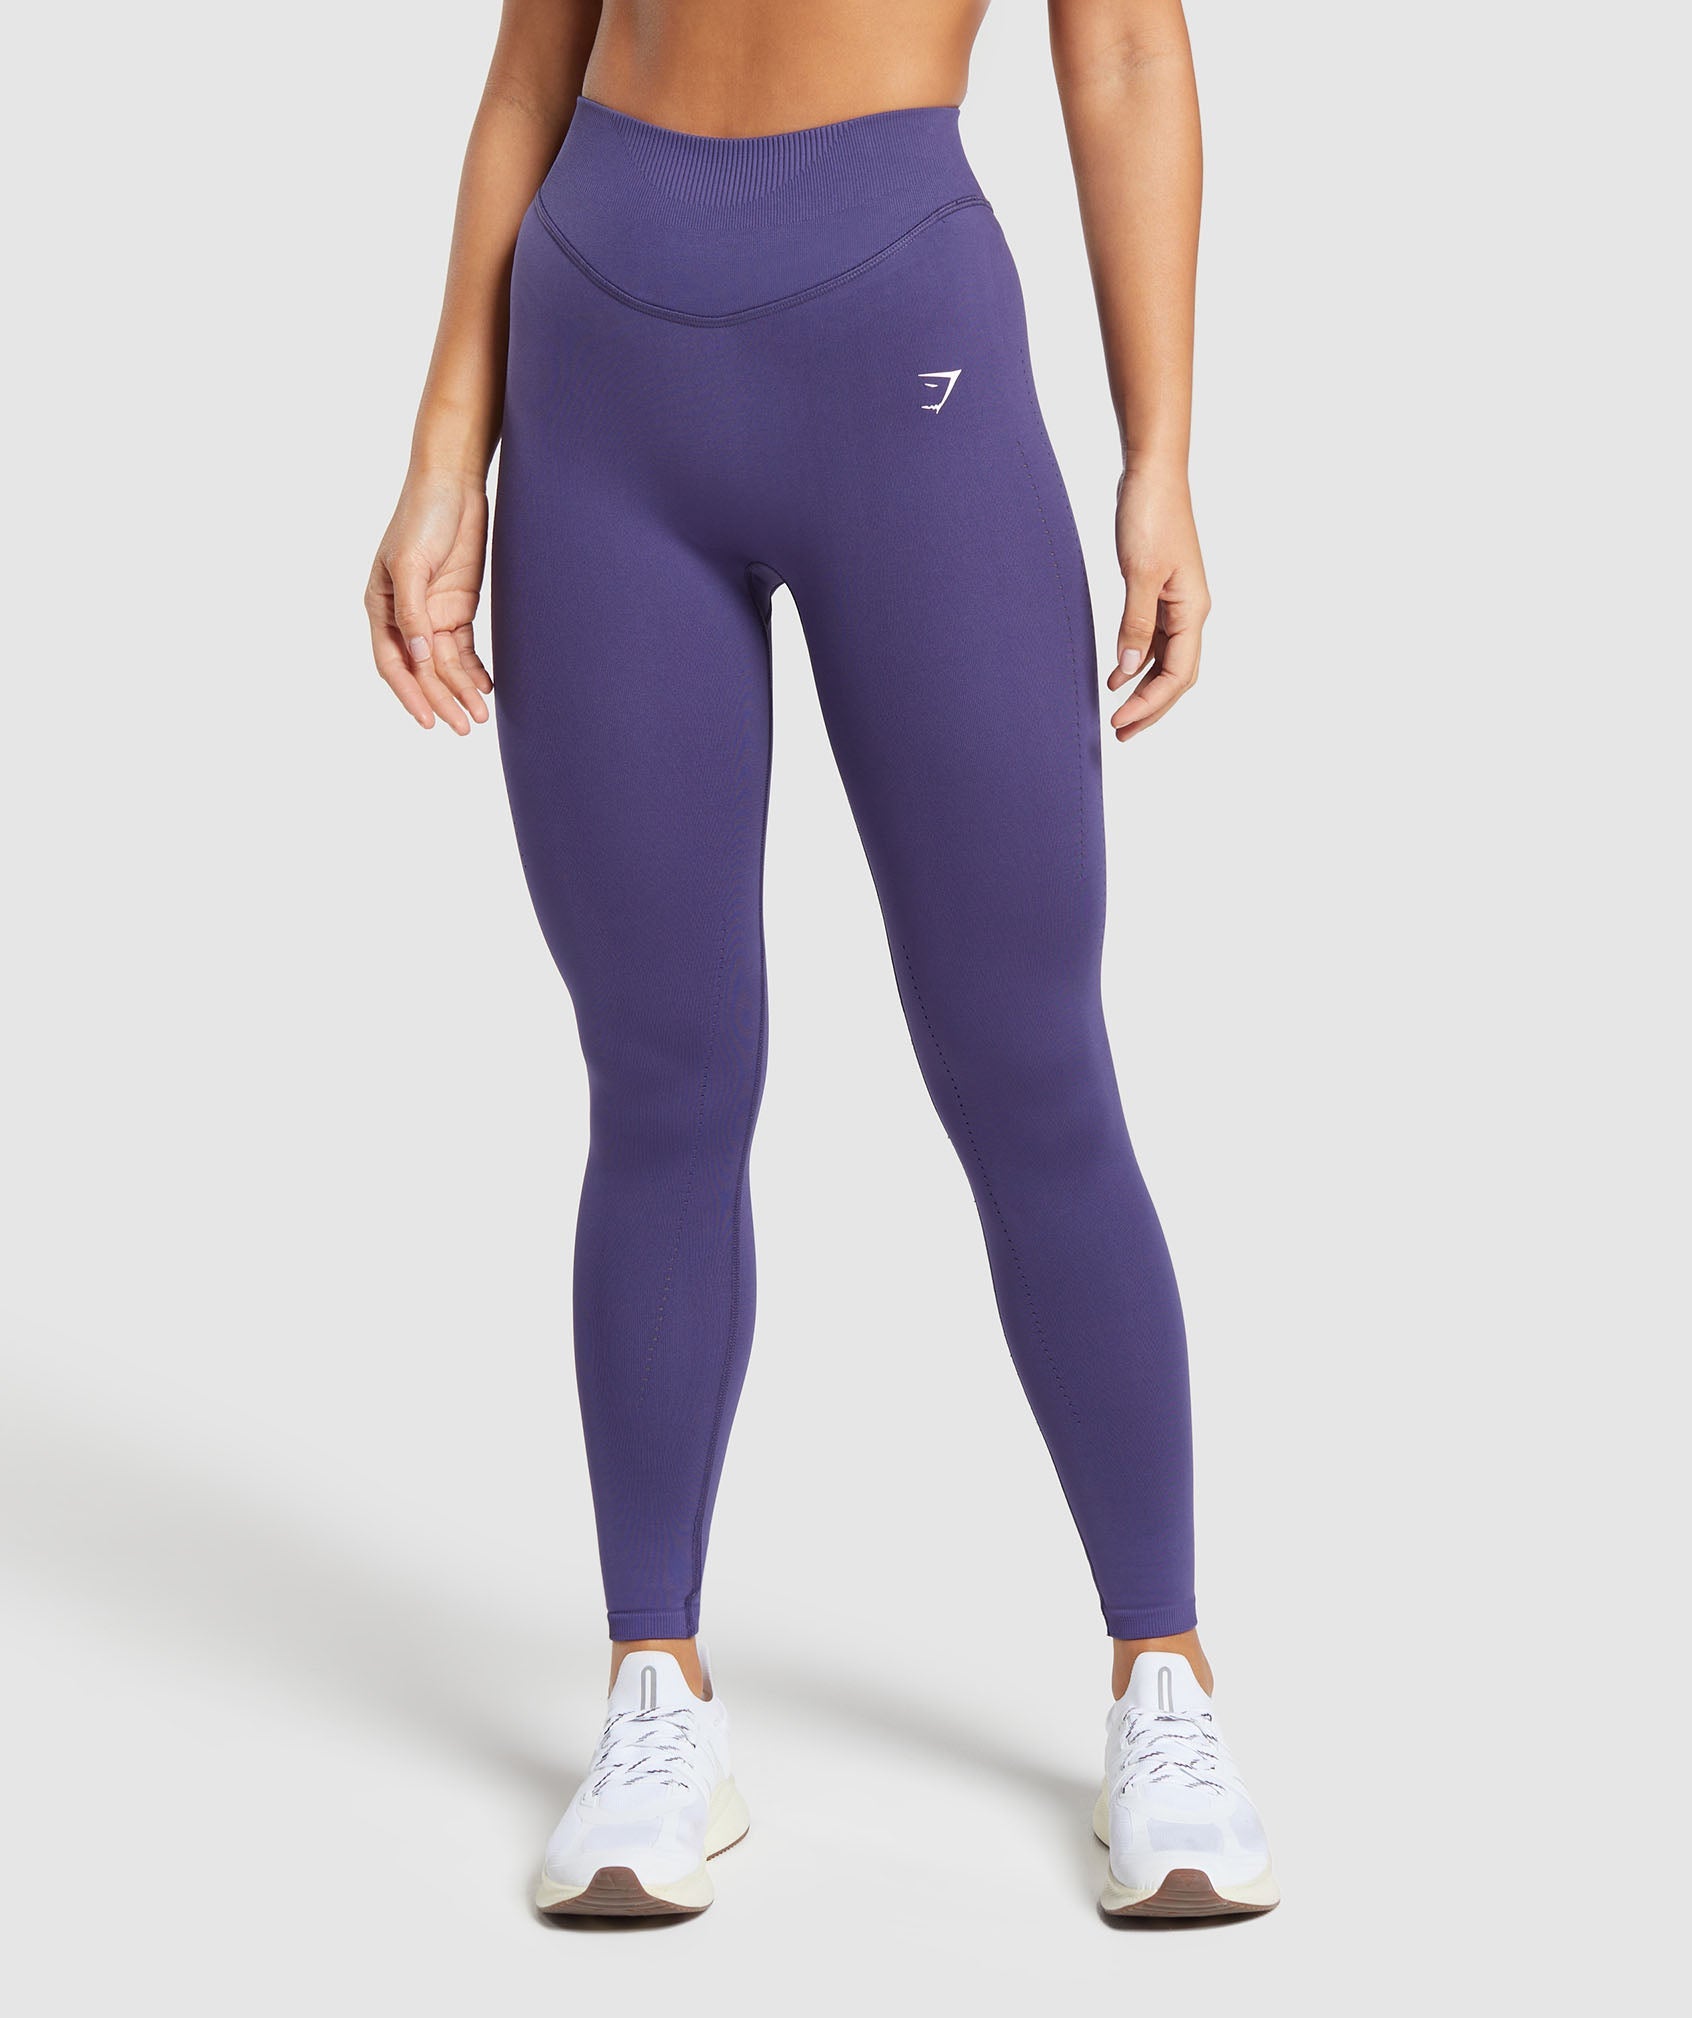 Sweat Seamless Leggings in Galaxy Purple